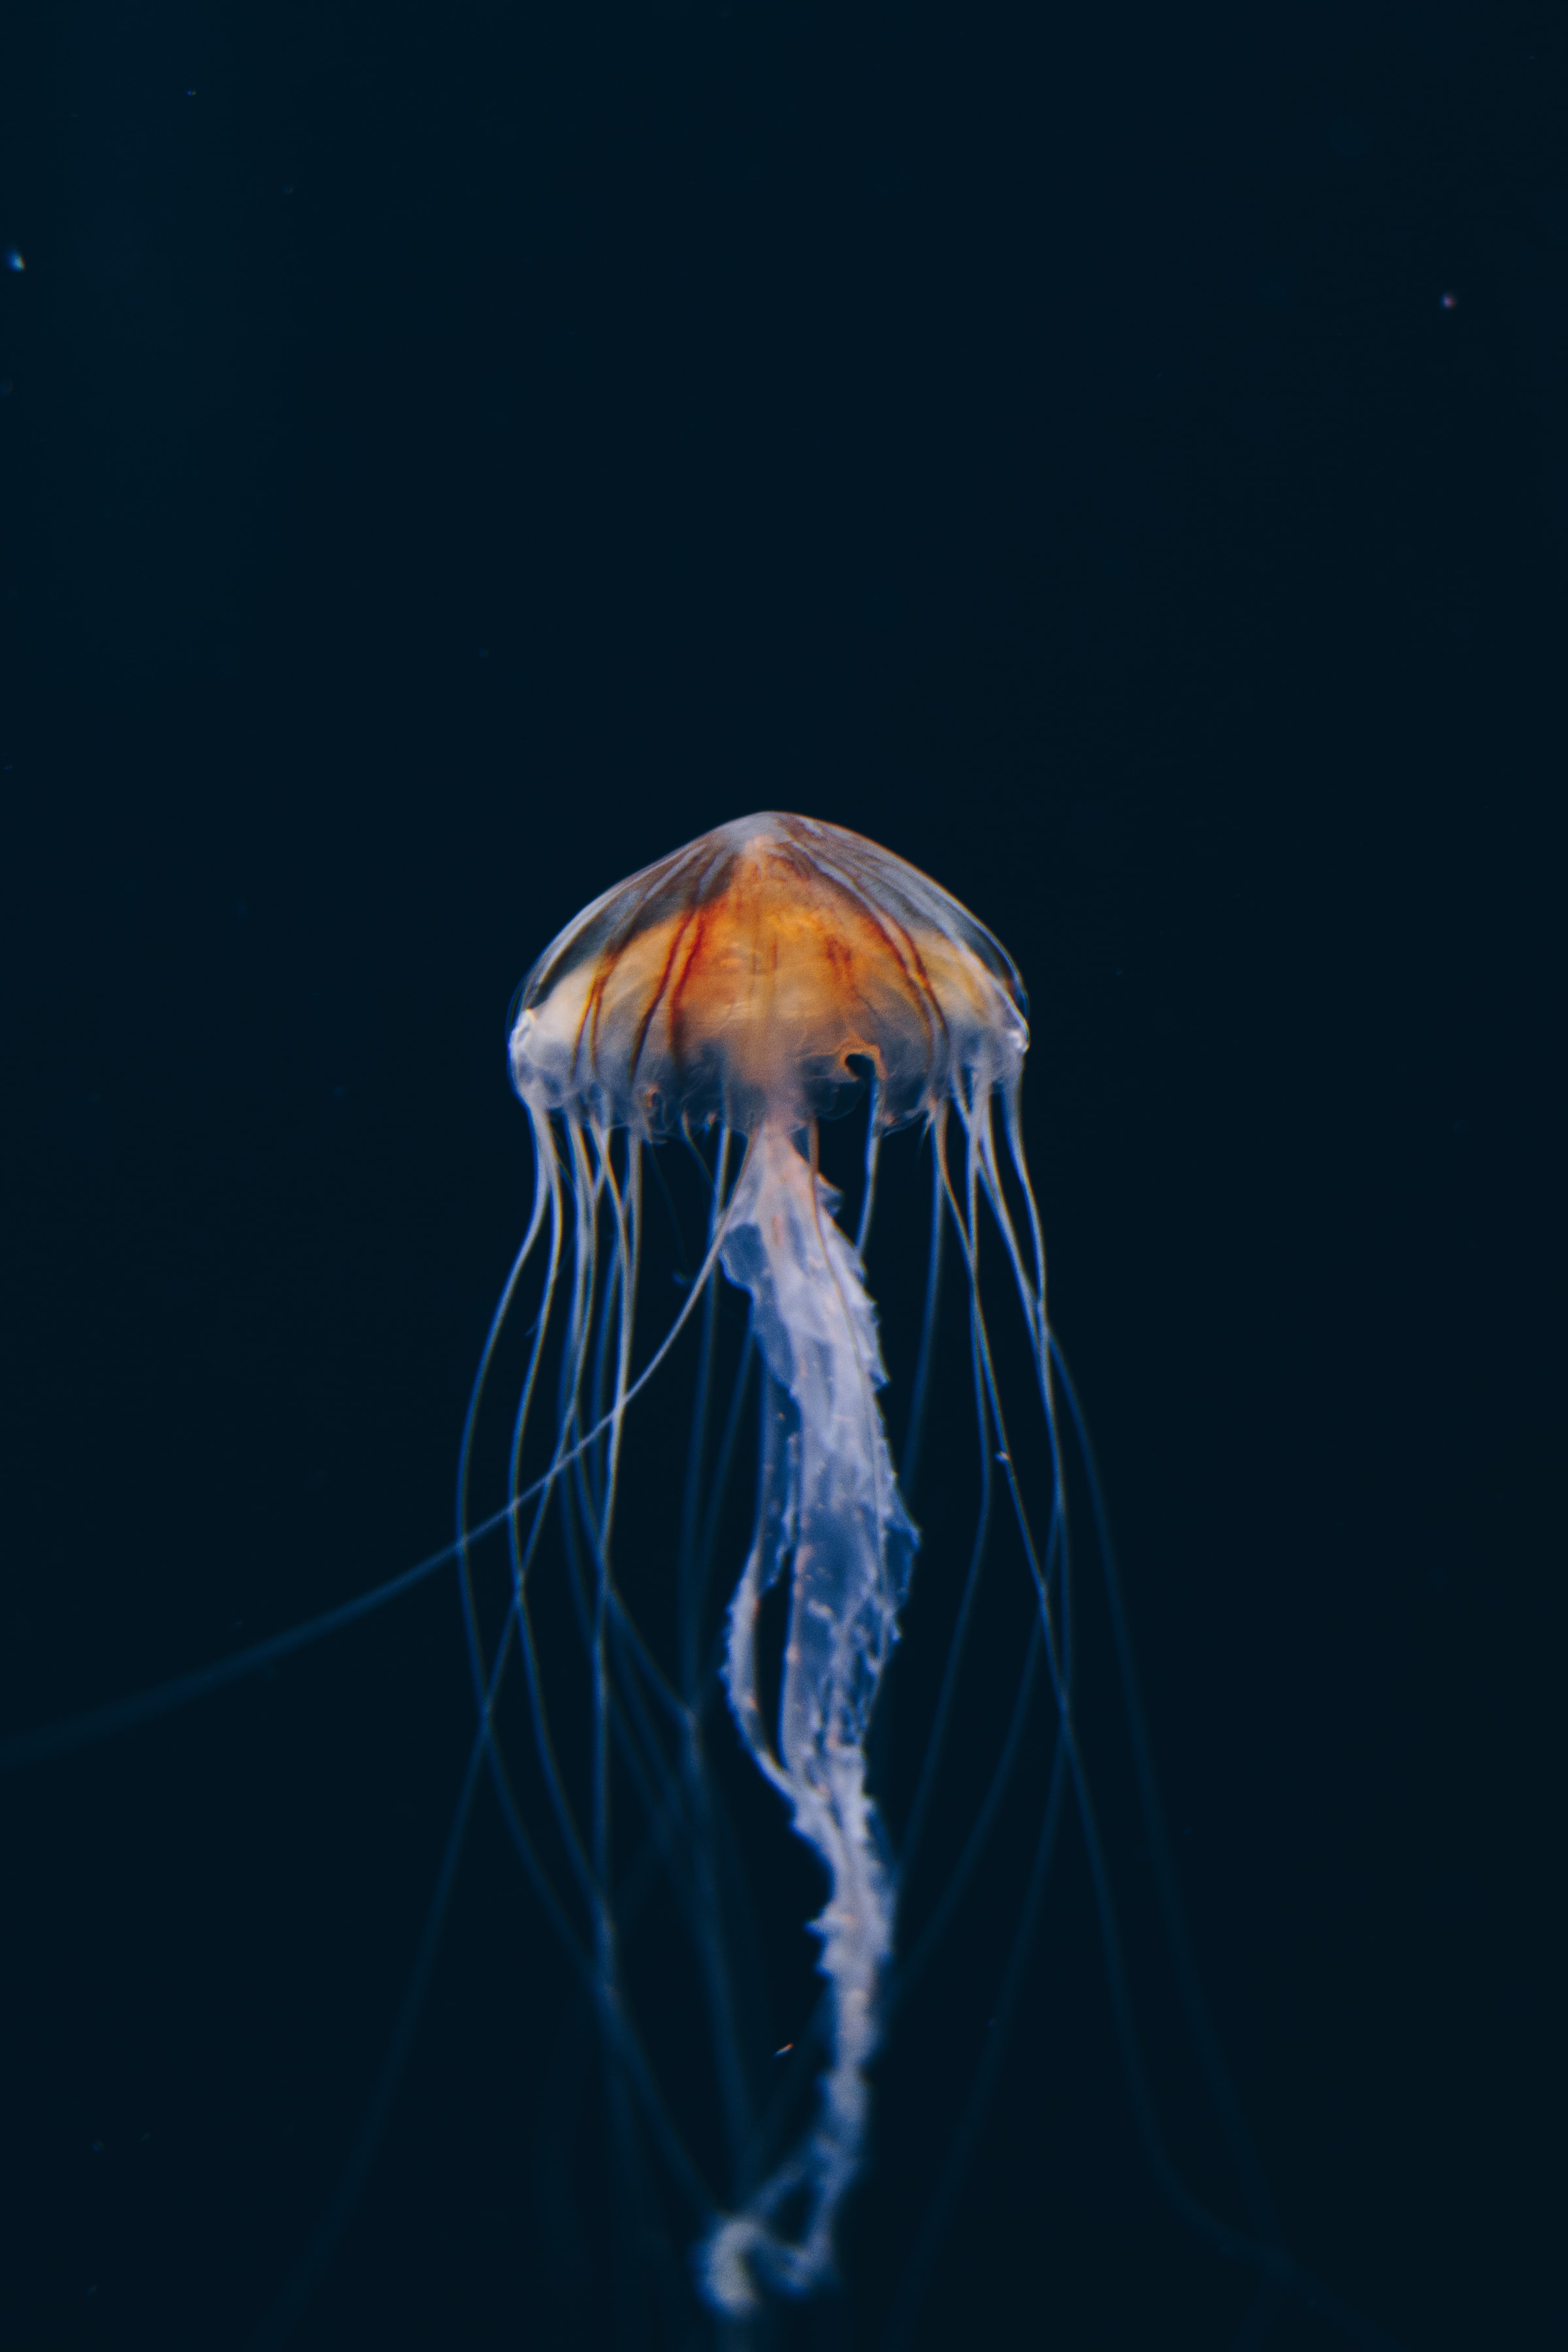 jellyfish, nature, water, dark, beautiful, underwater world